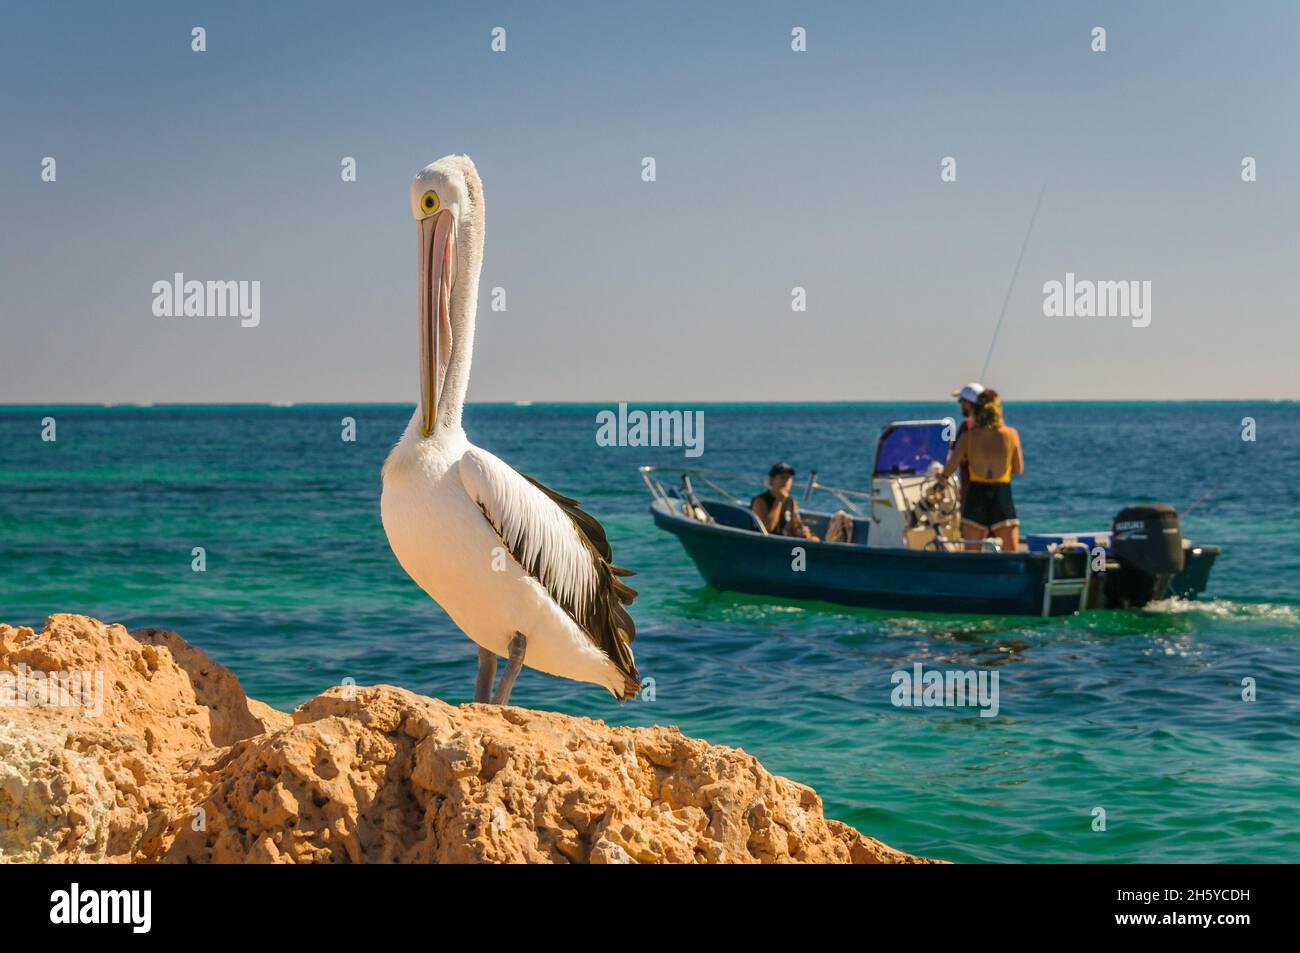 Un pélican australien se dresse sur une côte rocheuse tandis que trois pêcheurs passent dans un bateau de pêche motorisé à Coral Bay, en Australie occidentale. Banque D'Images